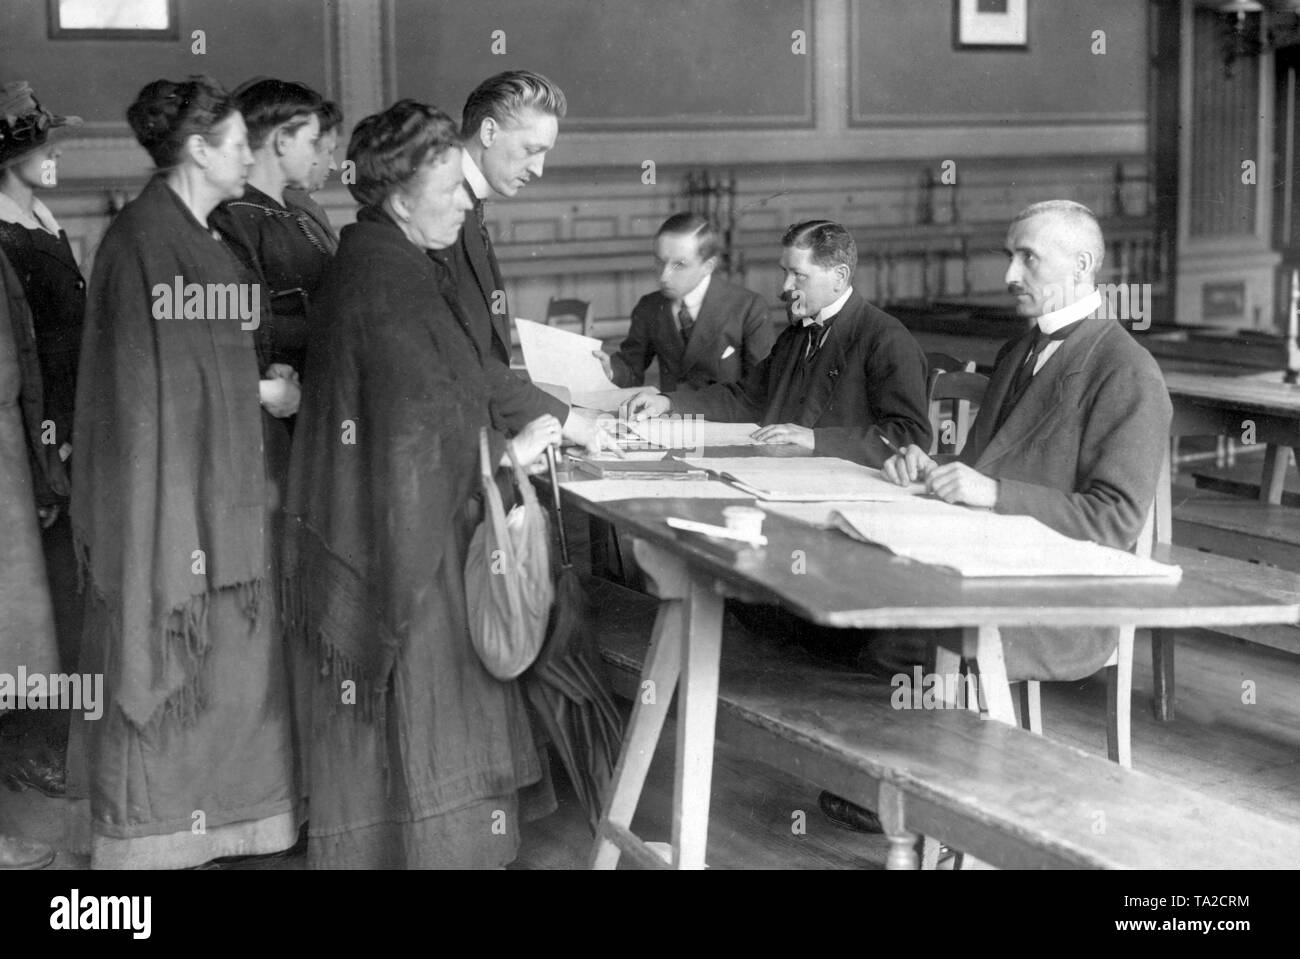 Bureau de scrutin dans Berlin, où de nombreuses femmes sont inscrits comme électeurs dans les listes de vote. Pour la première fois dans l'histoire de l'Allemagne, les femmes ont le plein droit de vote actif et passif, ici à l'élection de l'Assemblée nationale le 19.1.1919. Banque D'Images